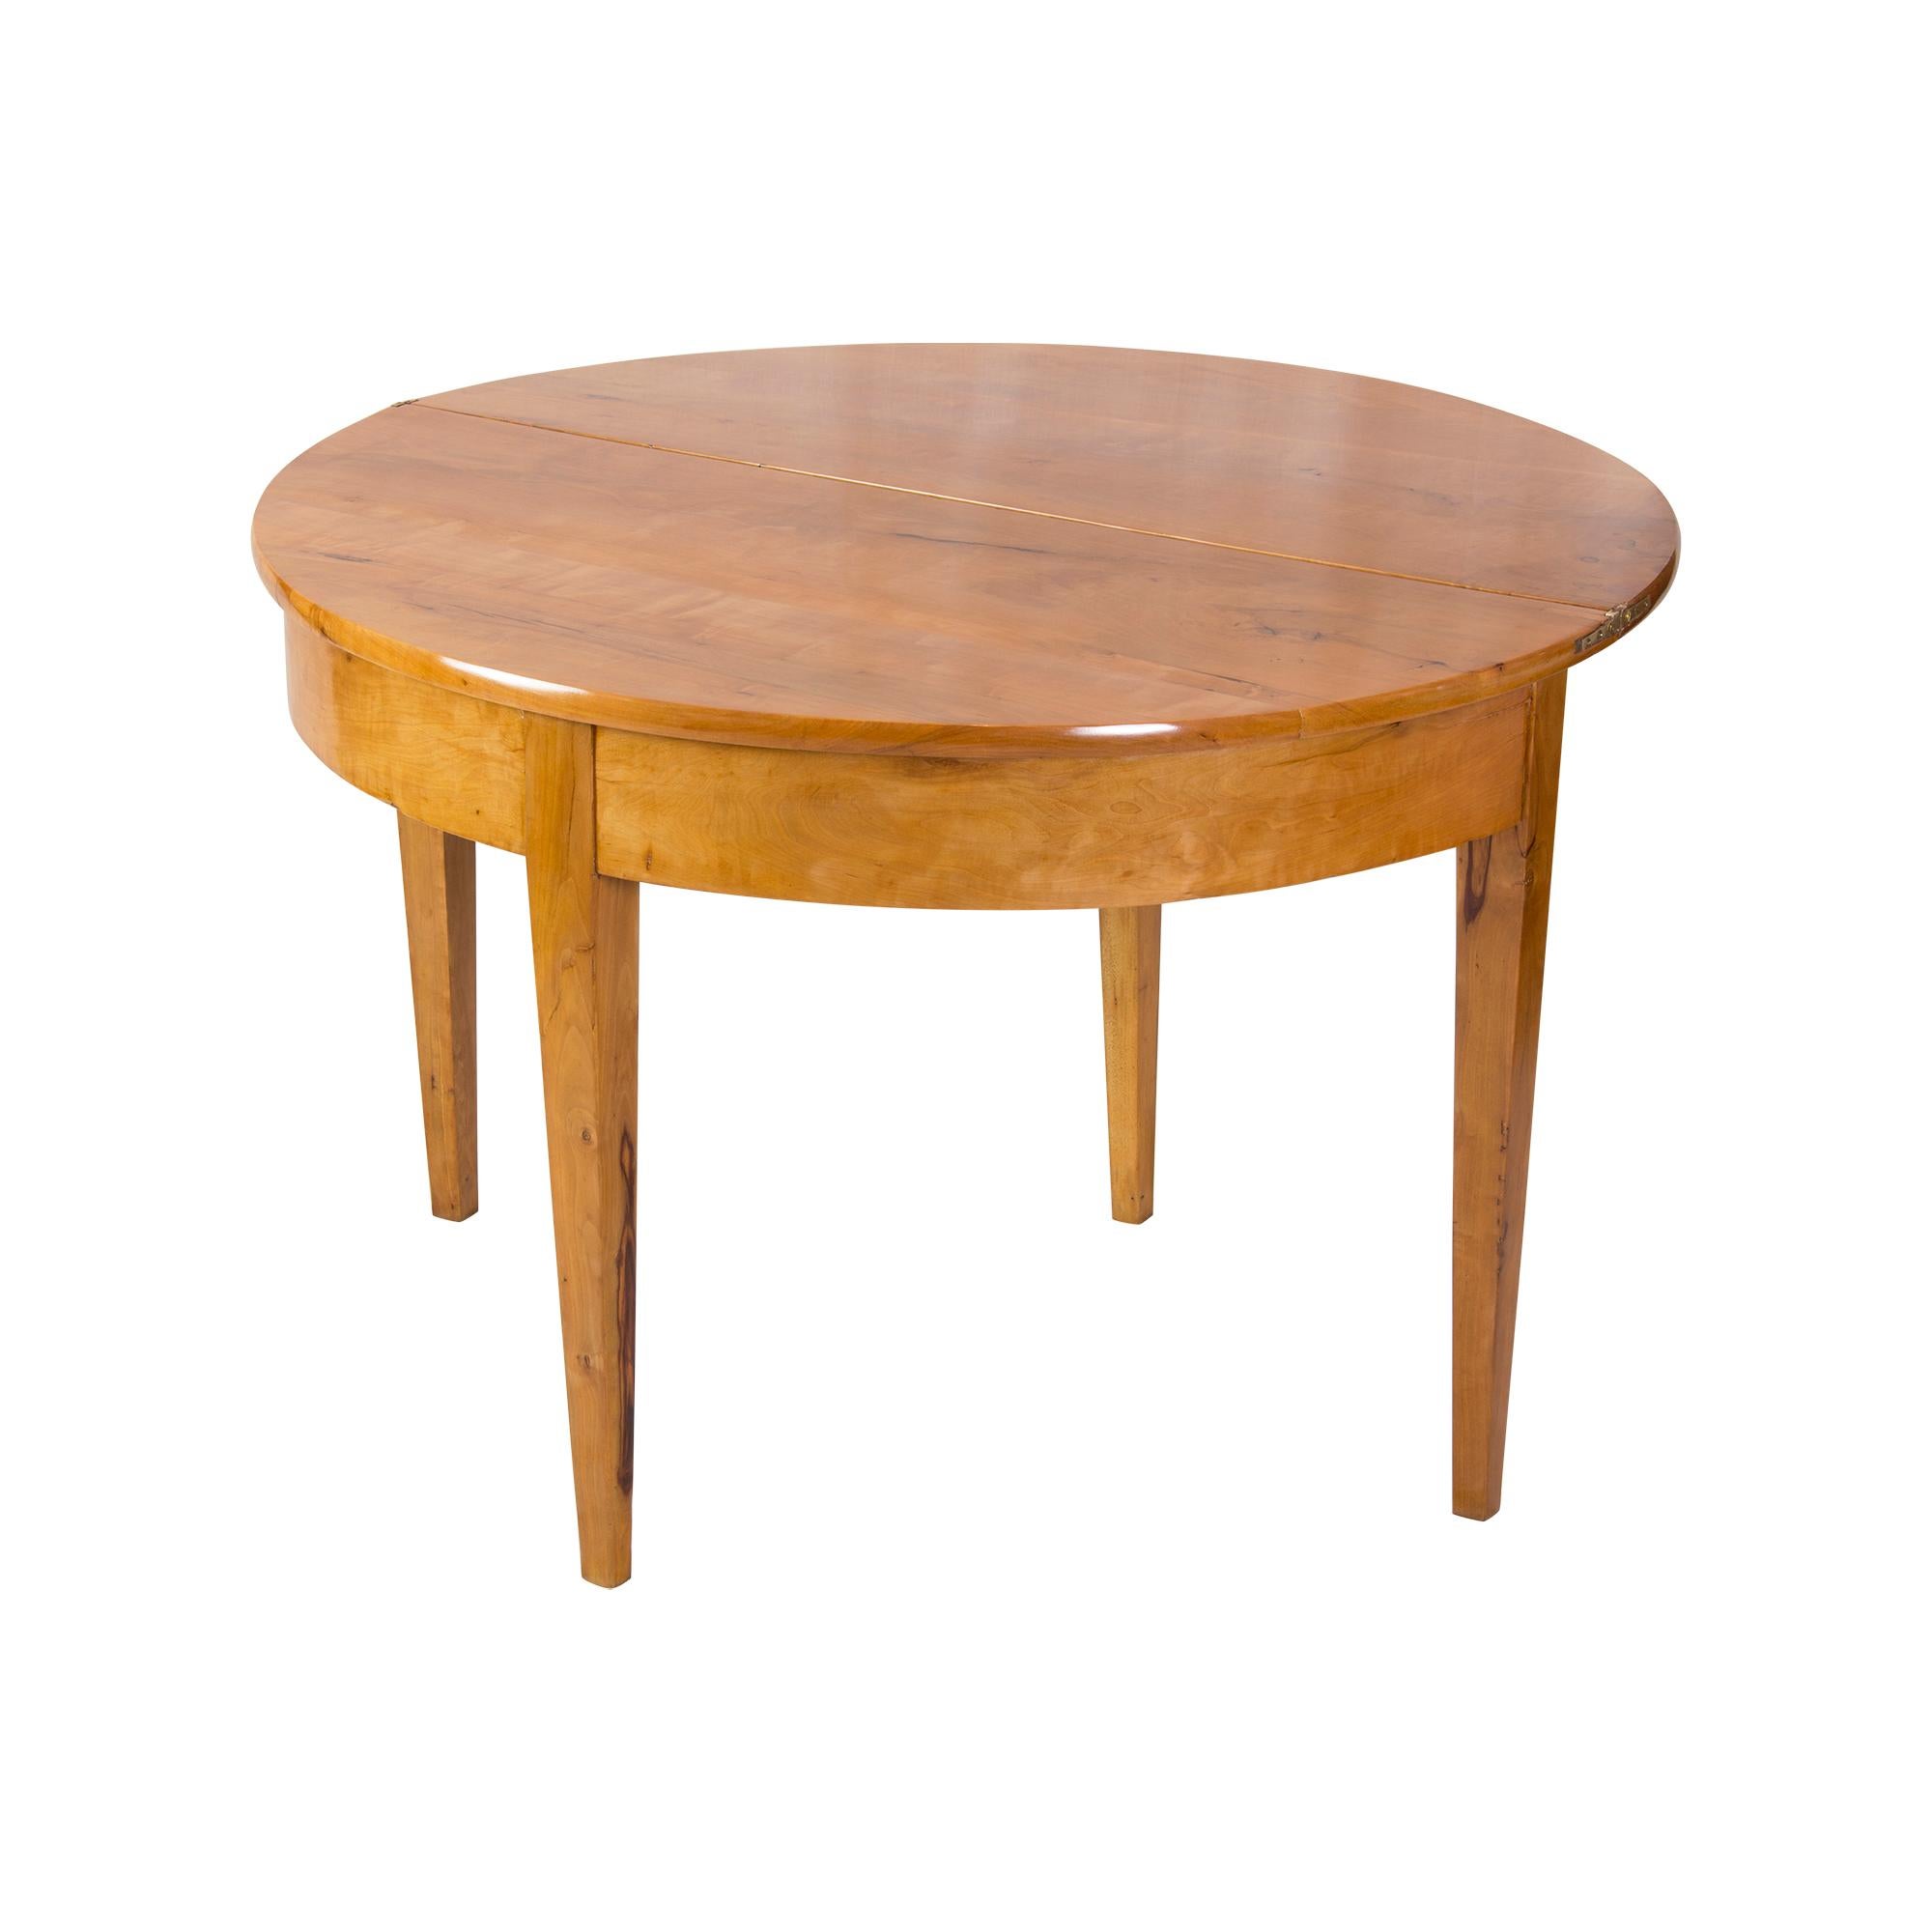 Schöne Demi Lune Tisch kann gegen die Wand als Konsole halbkreisförmig platziert werden. Oder zusammengeklappt in der Mitte des Raumes als runder Tisch. Der Tisch ist aus Pflaumenholz gefertigt. Das Holz hat eine schöne, kirschähnliche Farbe. Die